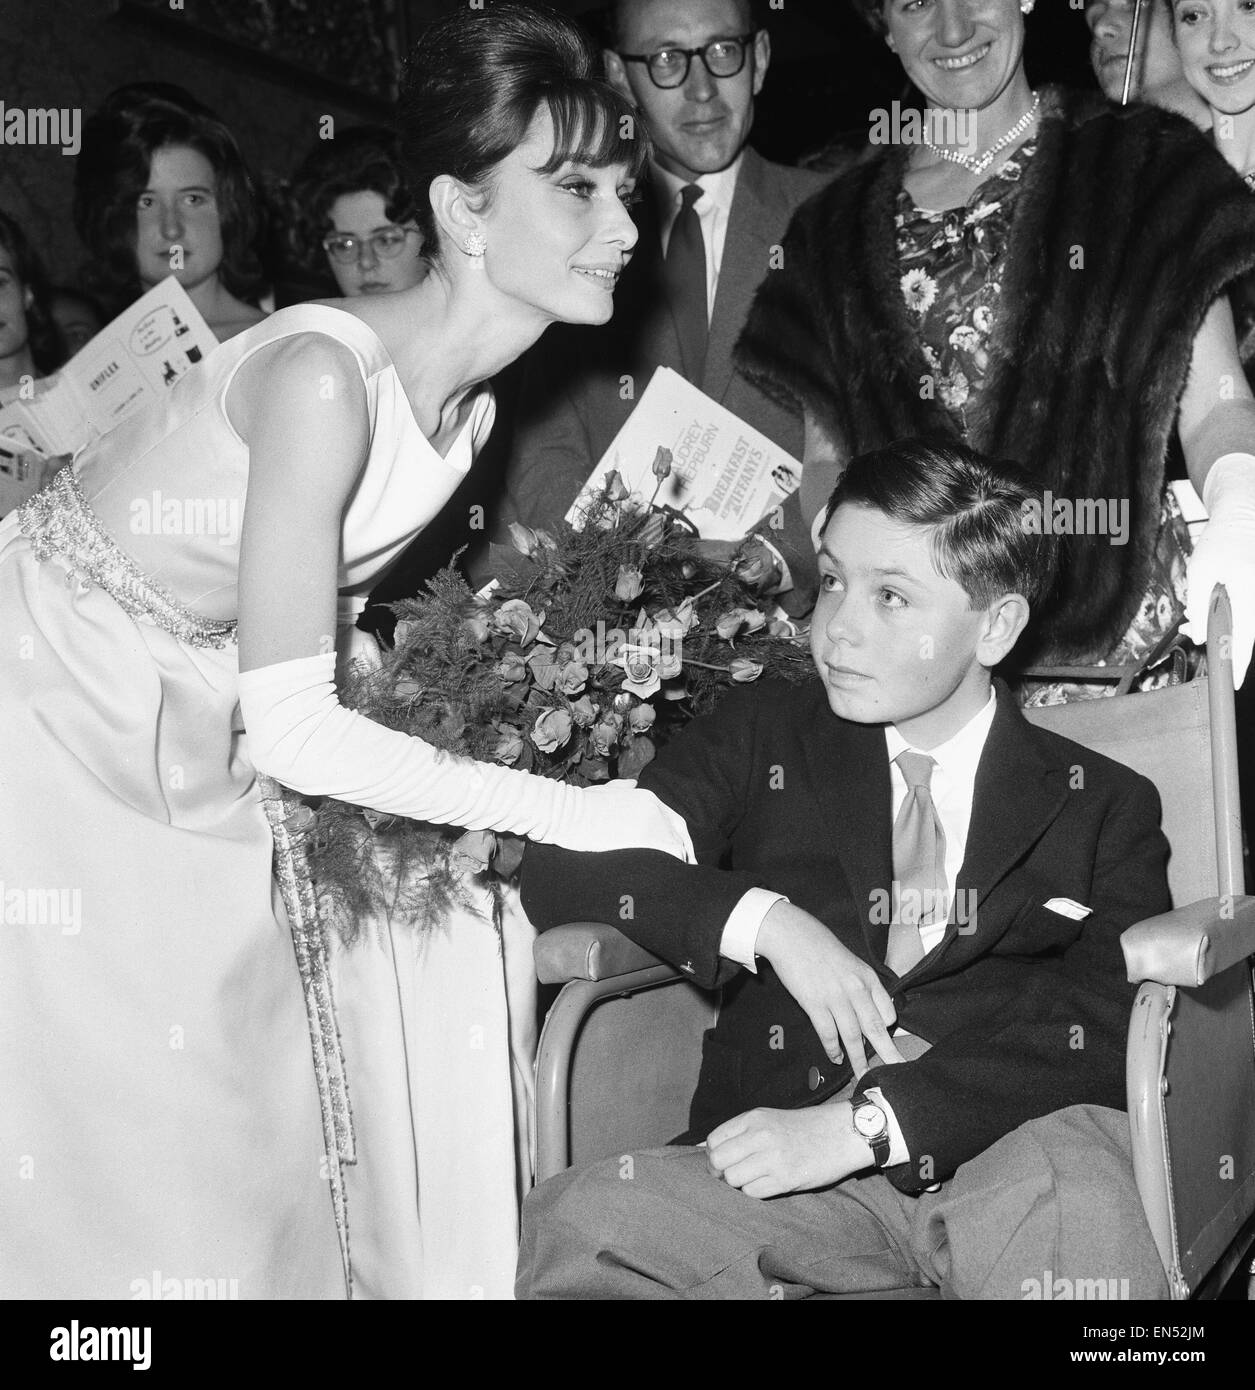 Schauspielerin Audrey Hepburn trifft 14-jährigen Stephen Reid von Chesham, Buckinghamshire auf der Londoner Premiere ihres neuesten Films "Breakfast At Tiffany" im Teatro Plaza. 19. Oktober 1961. Stockfoto